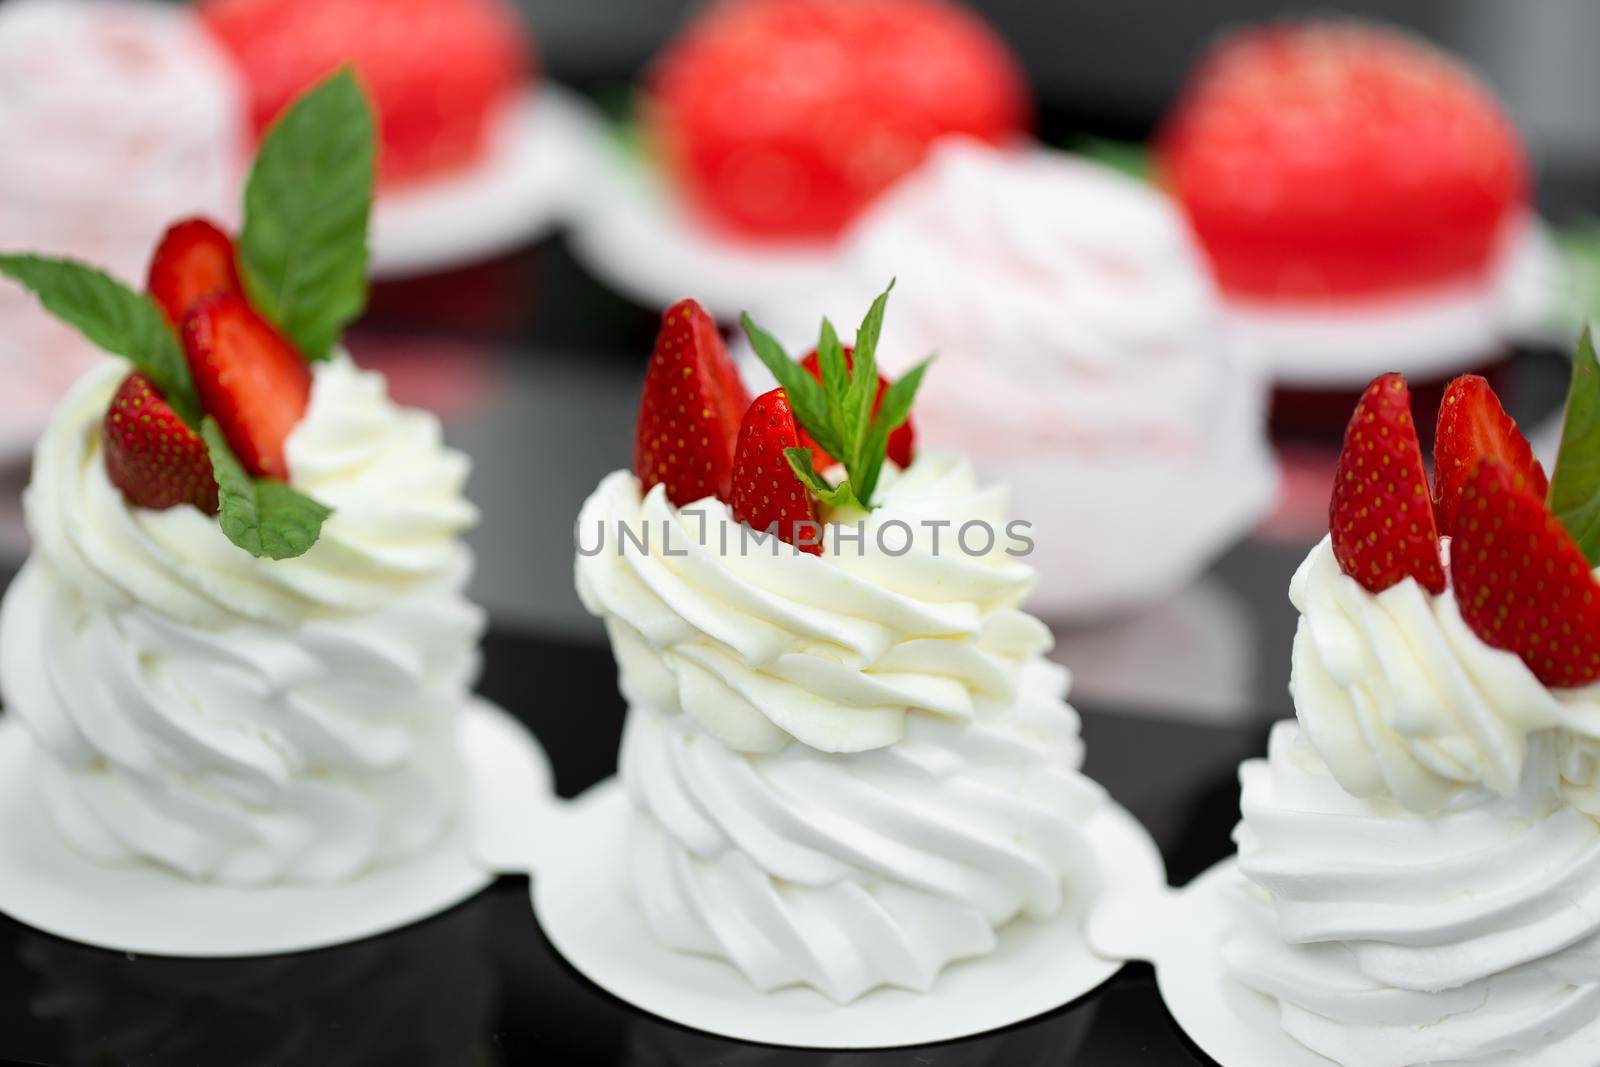 Pavlova meringue with cream and fresh strawberries.